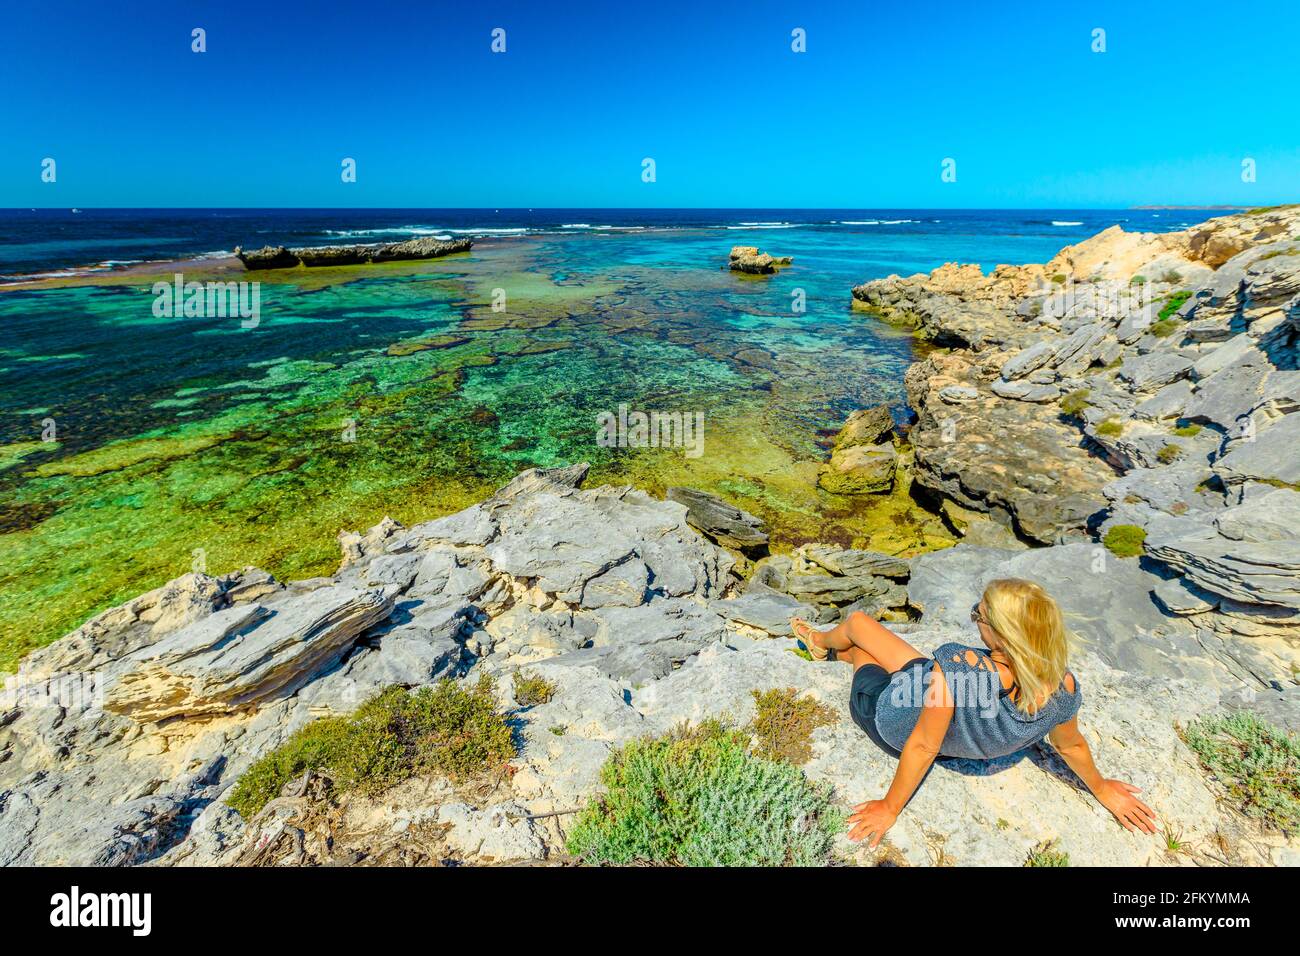 Une jeune fille touristique caucasienne fait du soleil sur des rochers qui regardent les eaux turquoise de Jeannies Lookout à Rottnest Island, Perth, Australie occidentale. Vue panoramique Banque D'Images